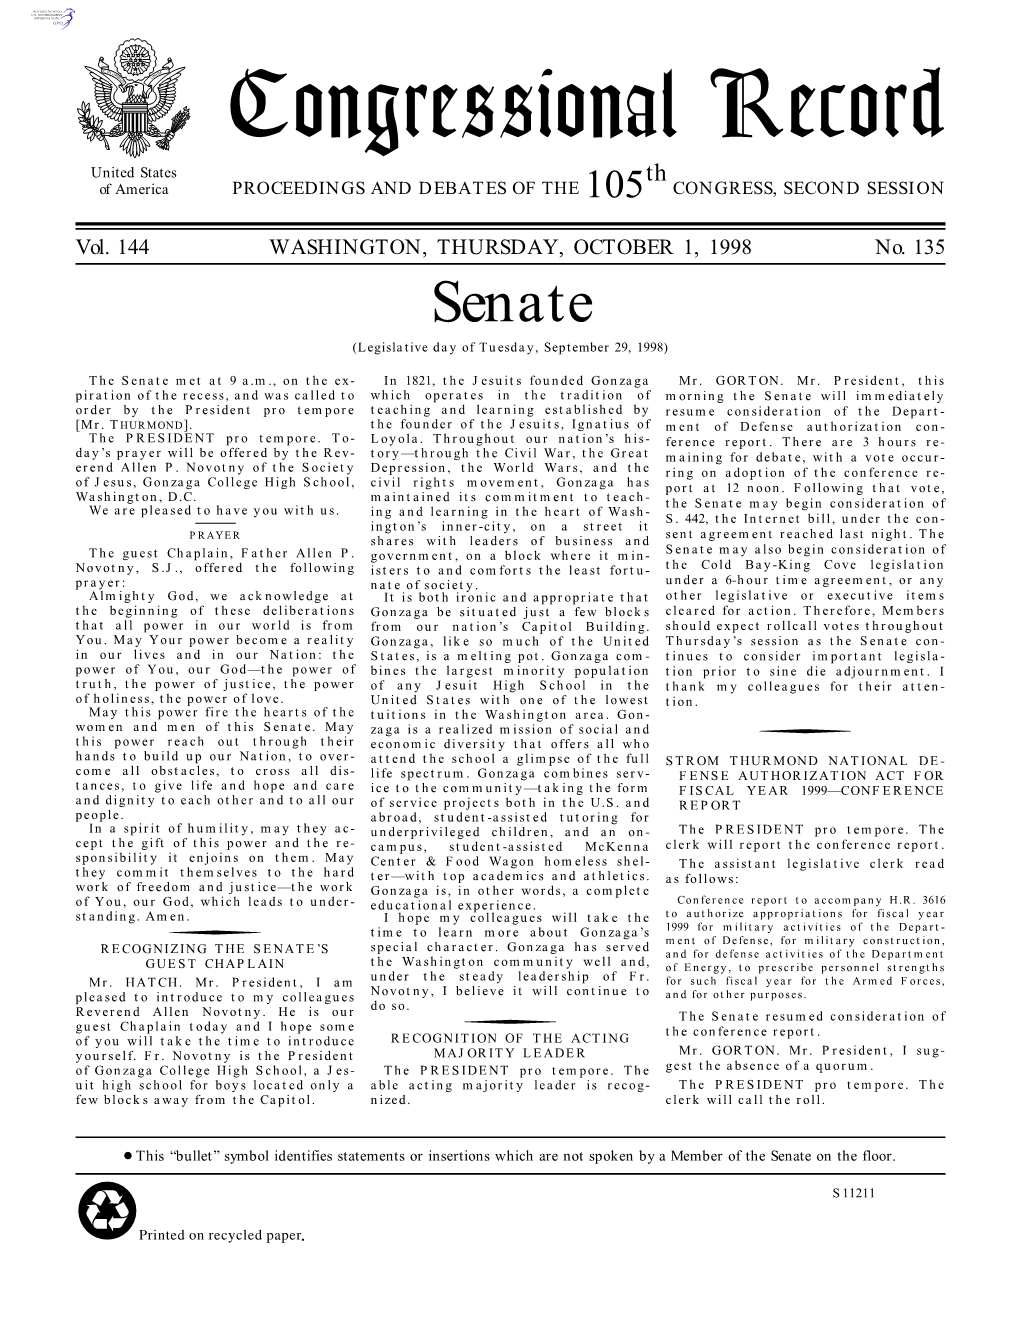 Senate (Legislative Day of Tuesday, September 29, 1998)